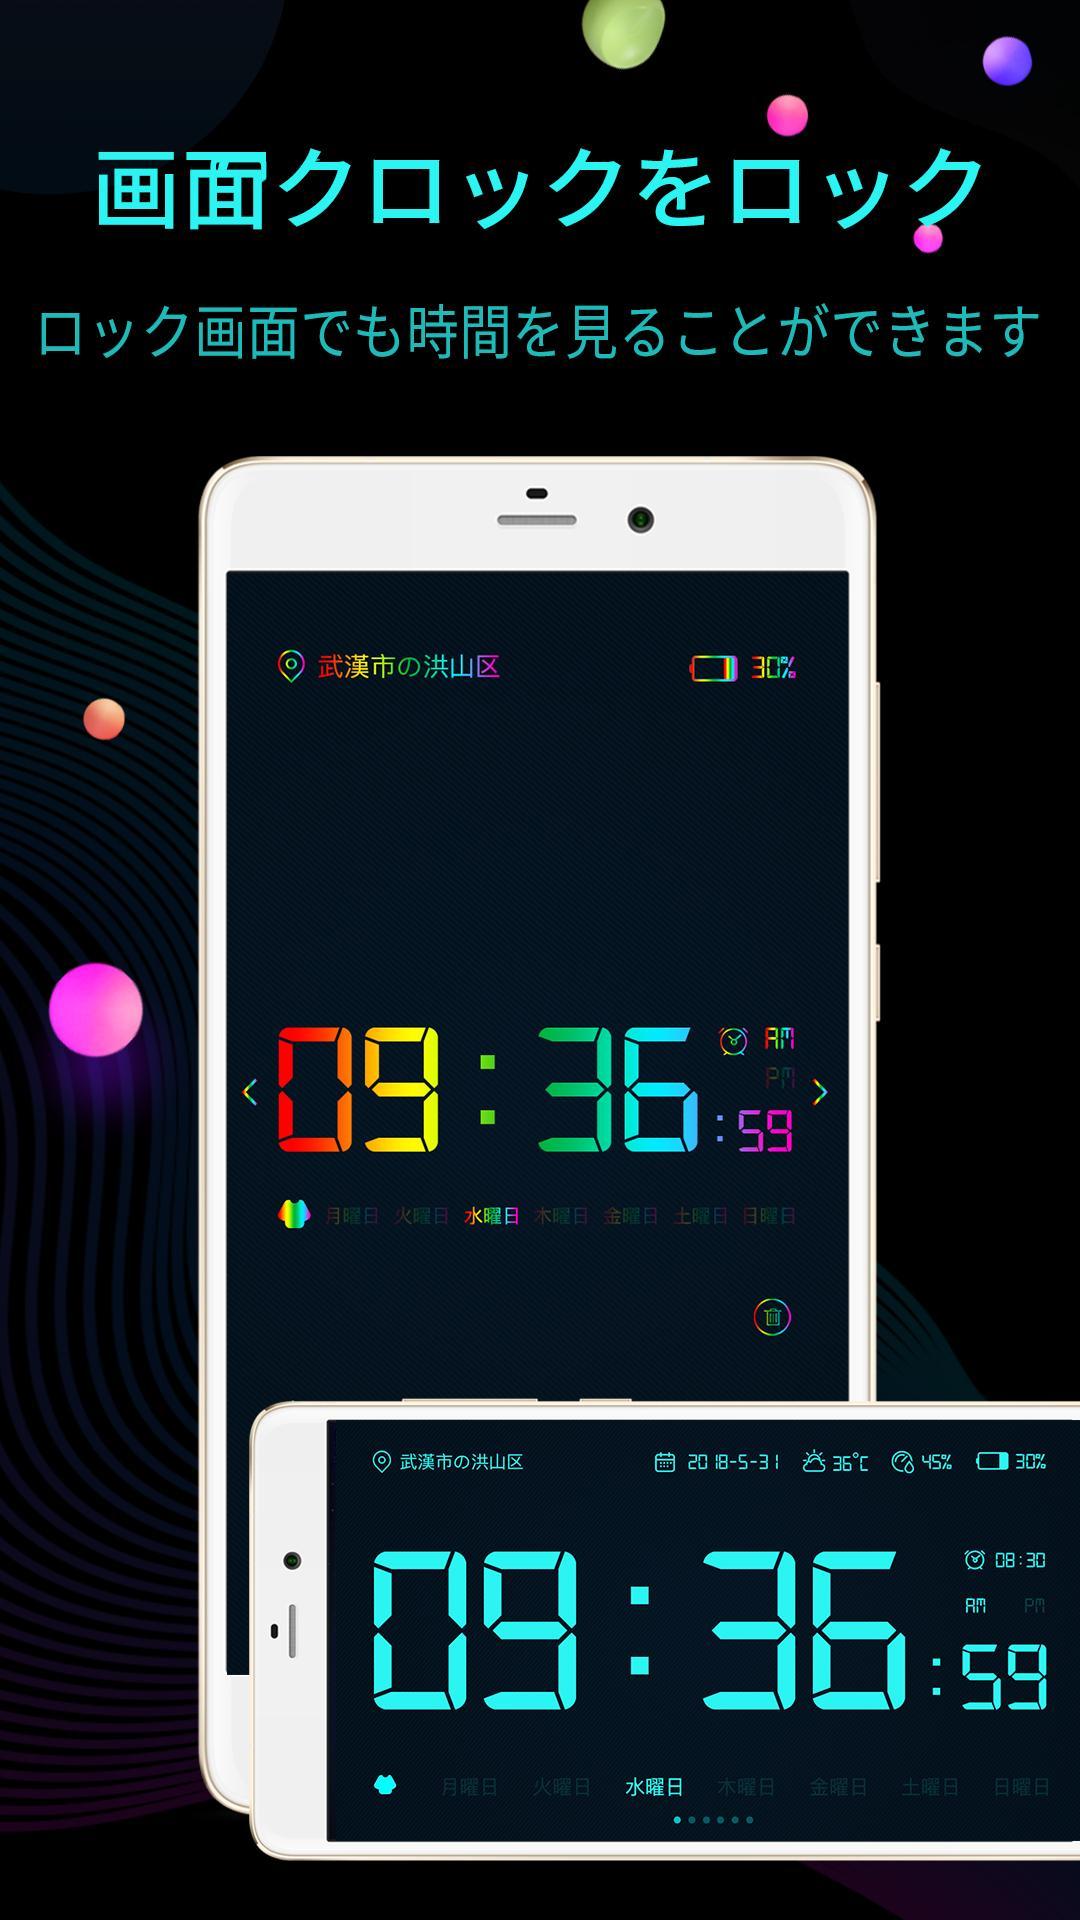 Android 用の 時計ライブ壁紙 アナログ時計 ウィジェット 無料 目覚まし時計 デジタル時計アプリ Apk をダウンロード